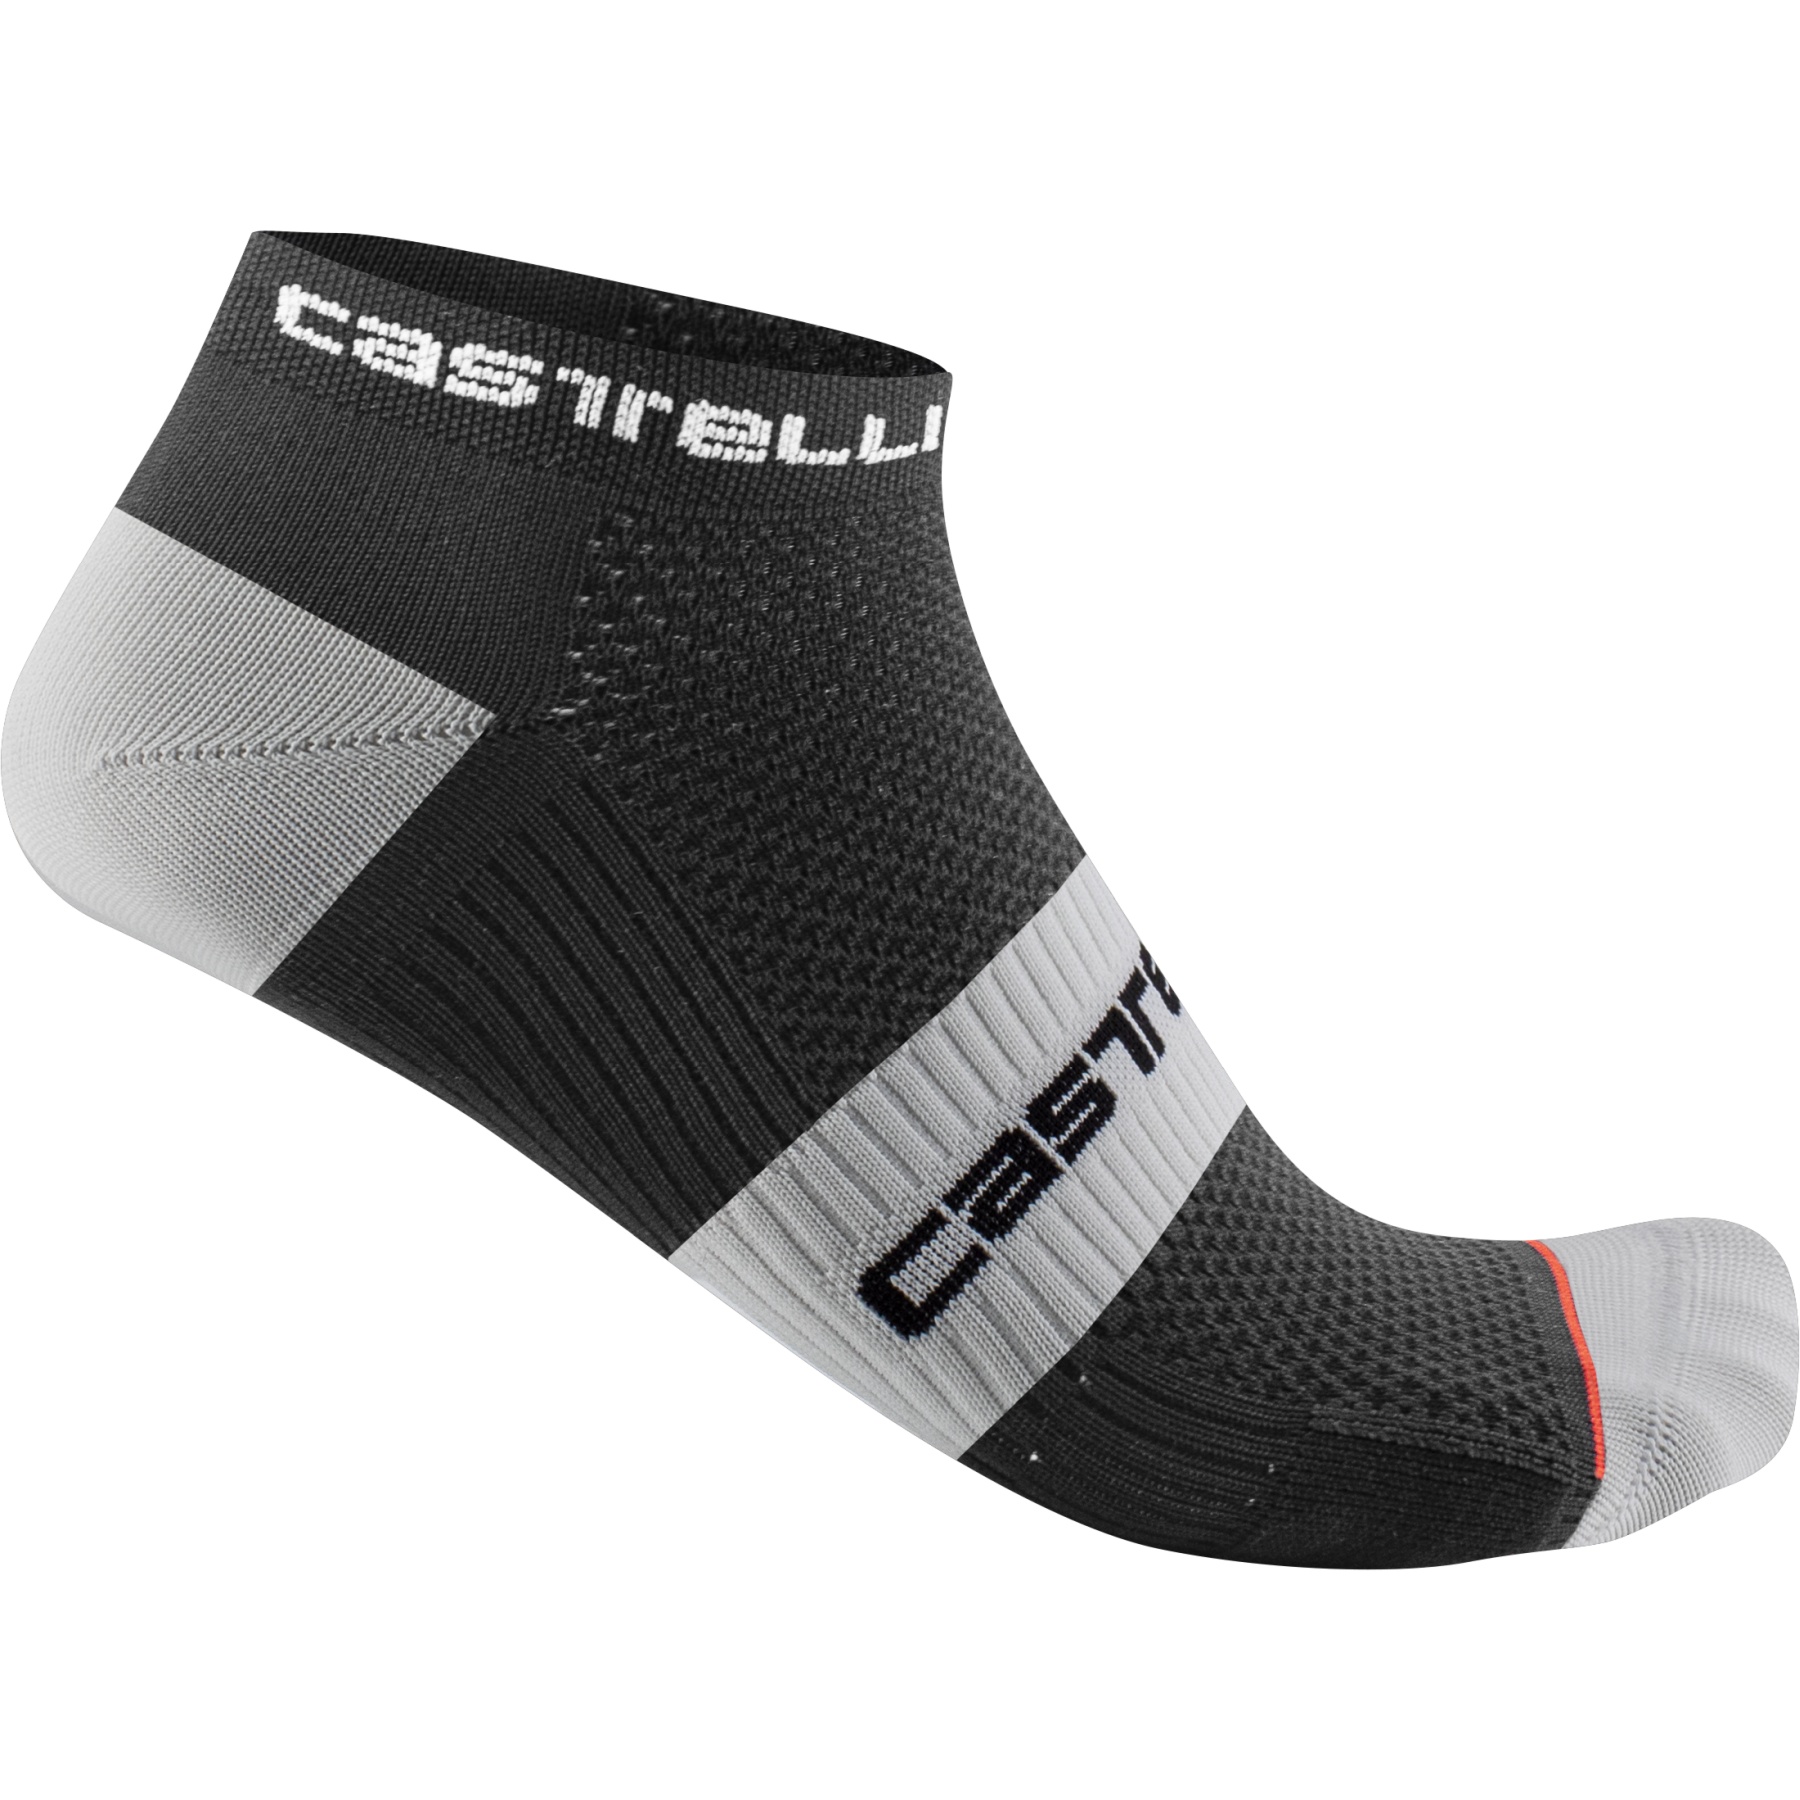 Bild von Castelli Lowboy 2 Socken - schwarz weiß 010